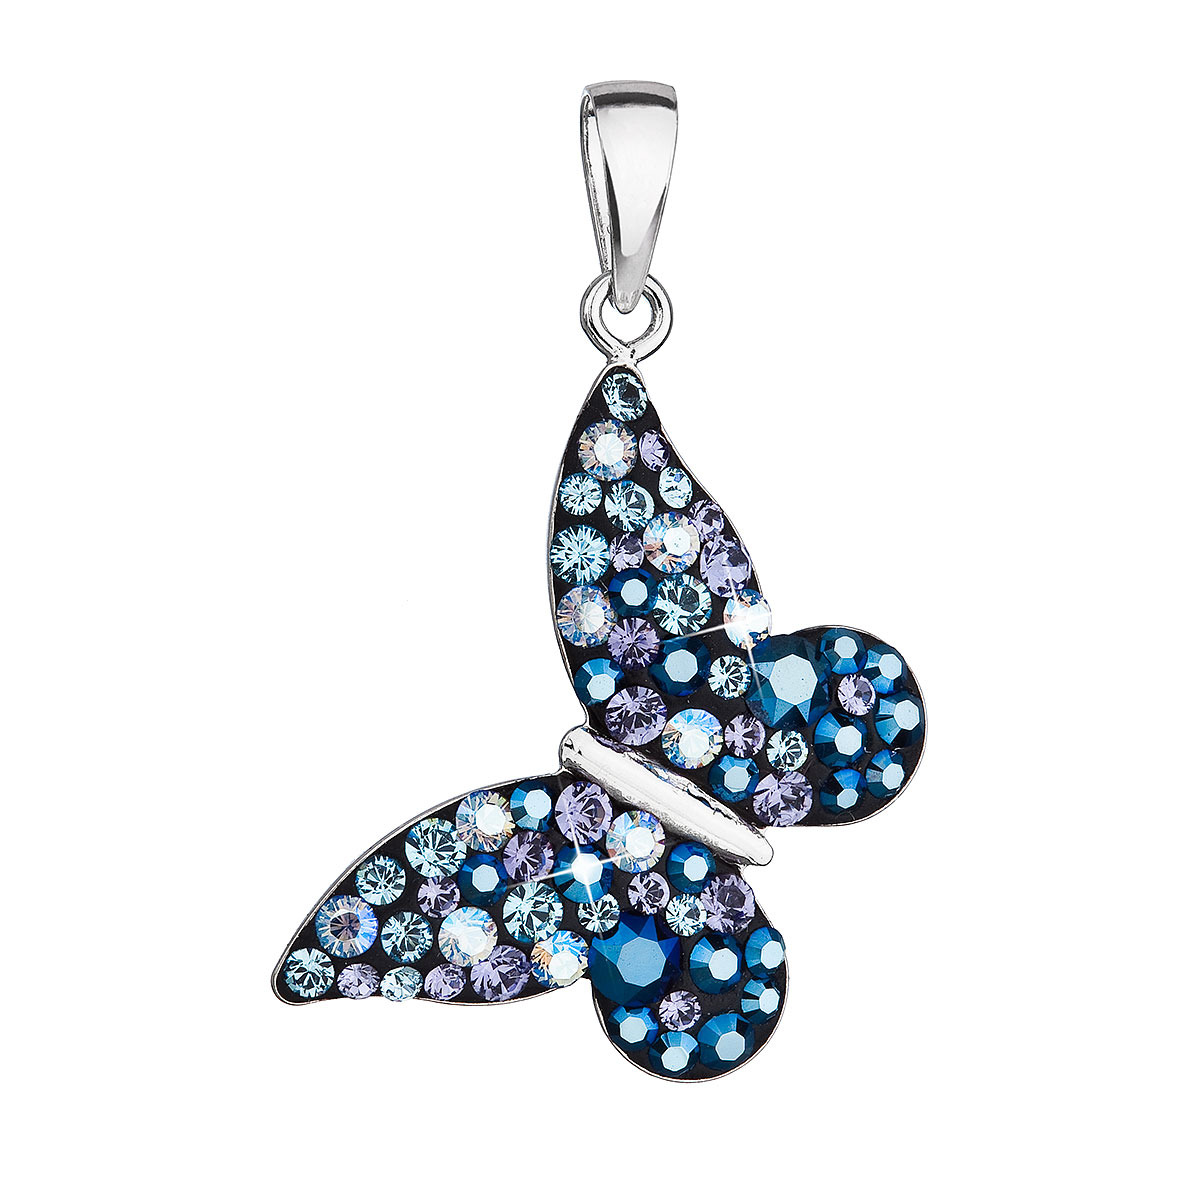 EVOLUTION GROUP CZ Stříbrný přívěšek motýlek s krystaly Crystals from Swarovski® Blue style - 34192.3